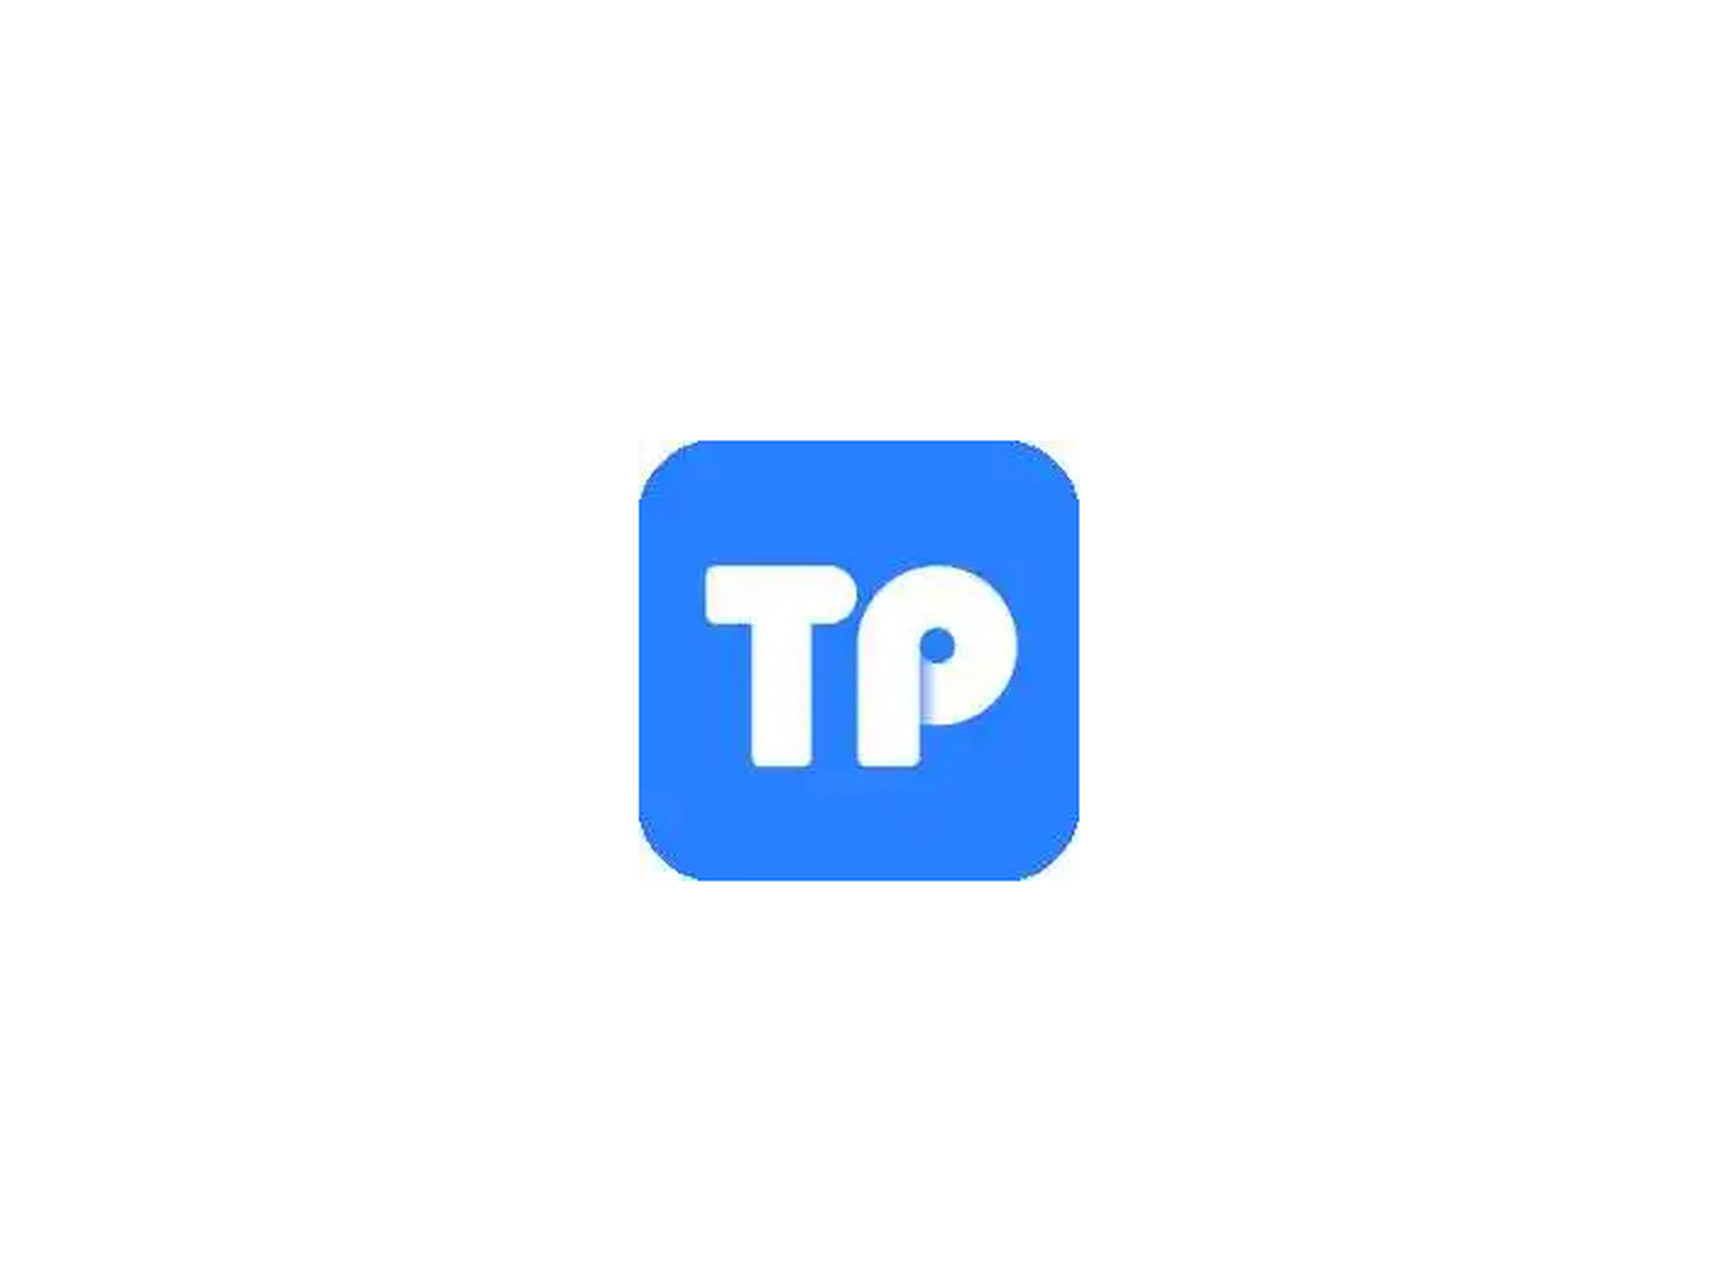 下载tp钱包并安装-tptoken钱包官方下载